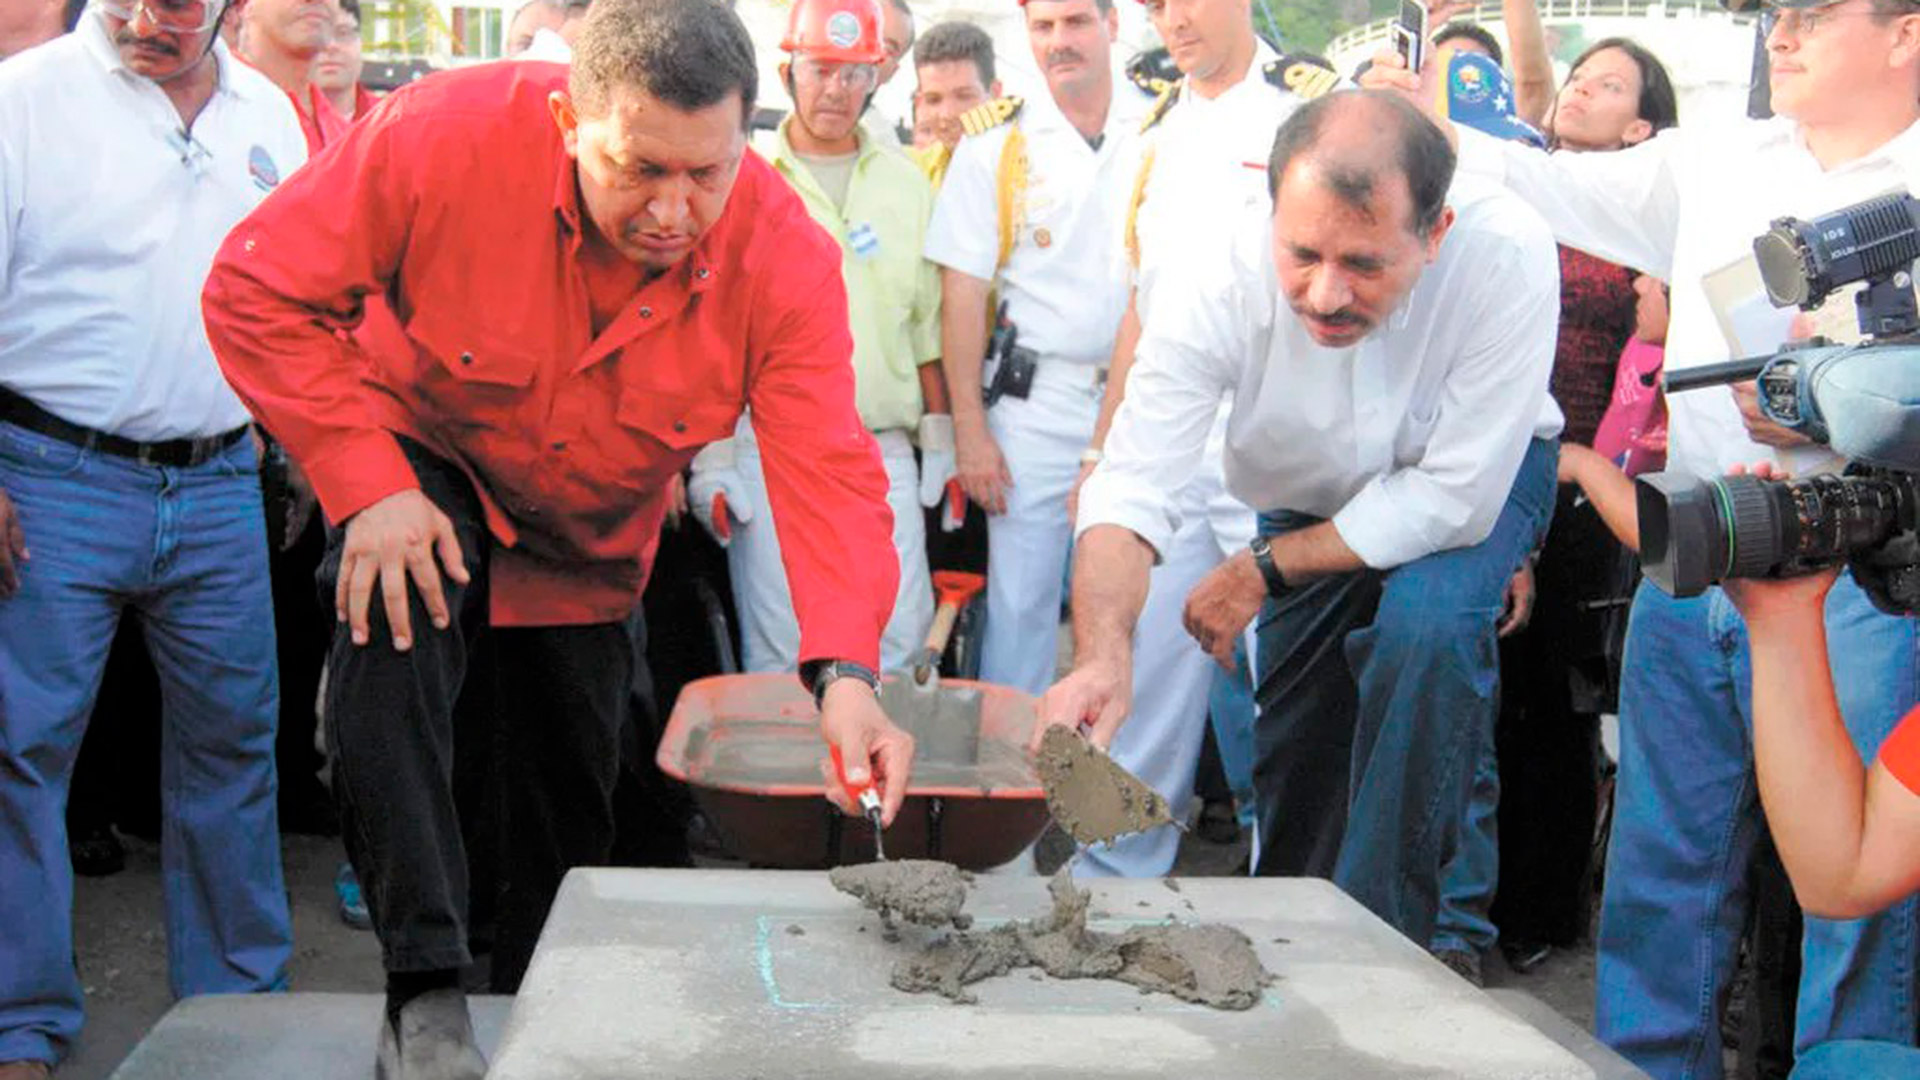 Tras su llegada al poder, Ortega firmó un acuerdo con el fallecido presidente venezolano, Hugo Chávez, que le habría dejado unos seis mil millones de dólares de libre uso. En la foto, cuando presentaron en agosto de 2007 el proyecto de una refinería que nunca se construyó.